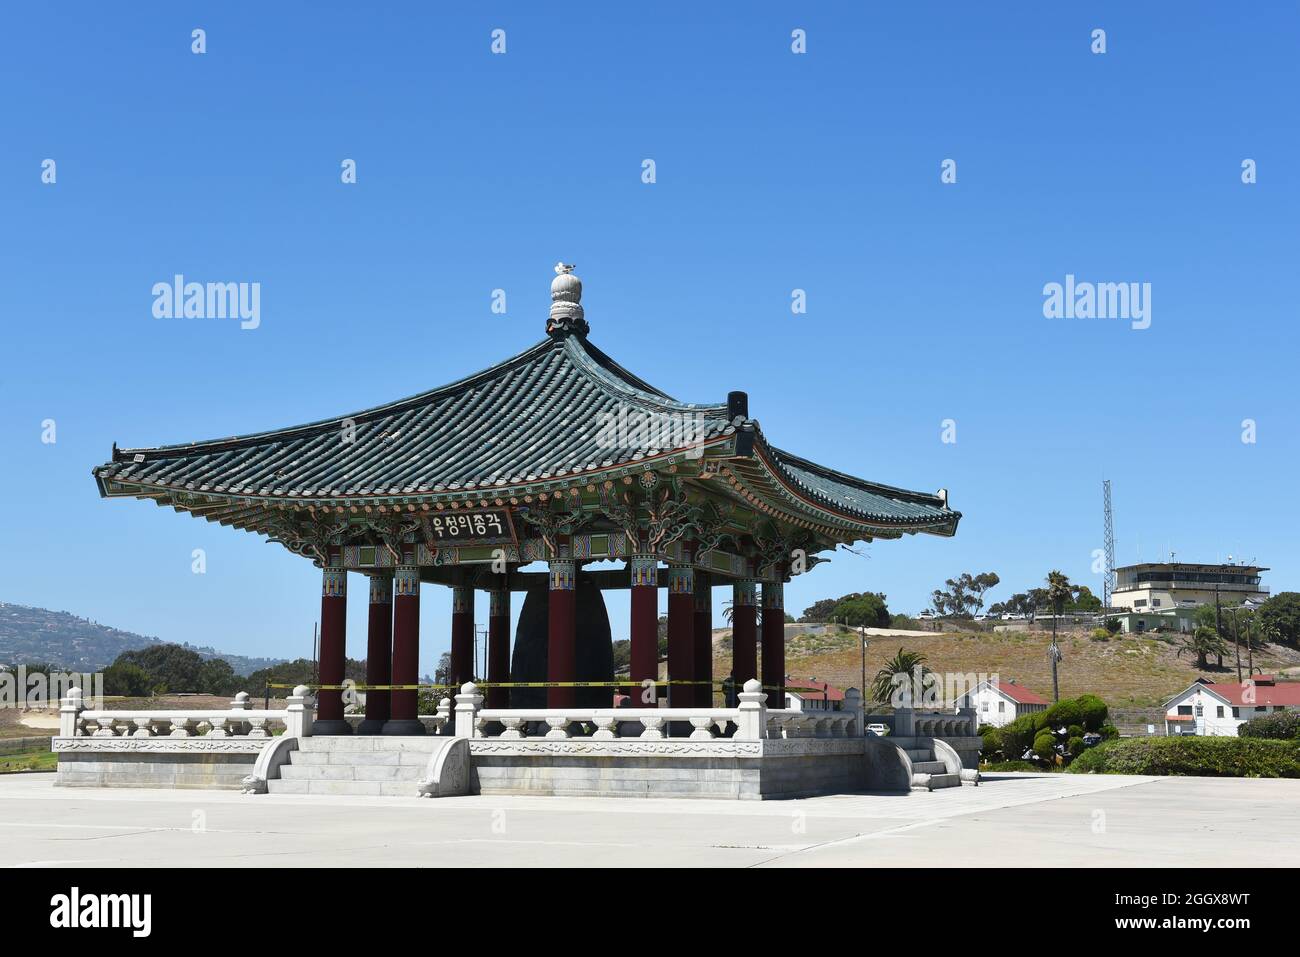 SAN PEDRO, KALIFORNIEN - 27. AUG 2021: Die koreanische Glocke der Freundschaft ist eine massive Bronzeglocke, die in einem Steinpavillon im Angel's Gate Park untergebracht ist. Stockfoto